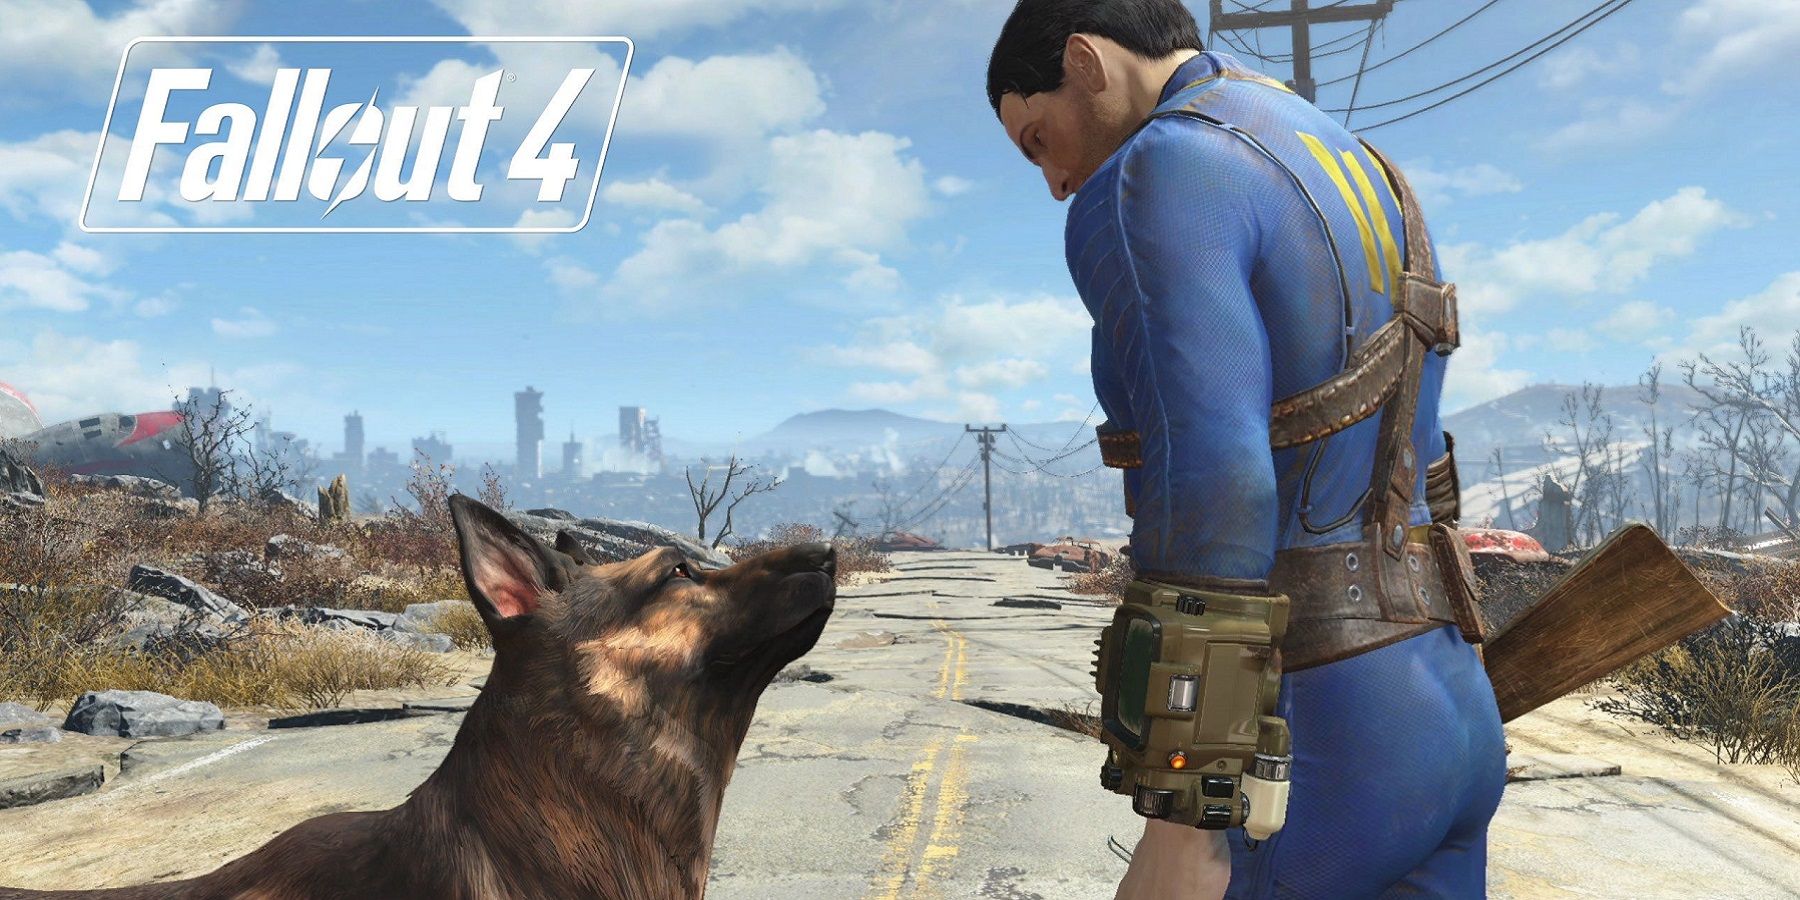 Изображение из Fallout 4, на котором главный герой смотрит на Dogmeat.